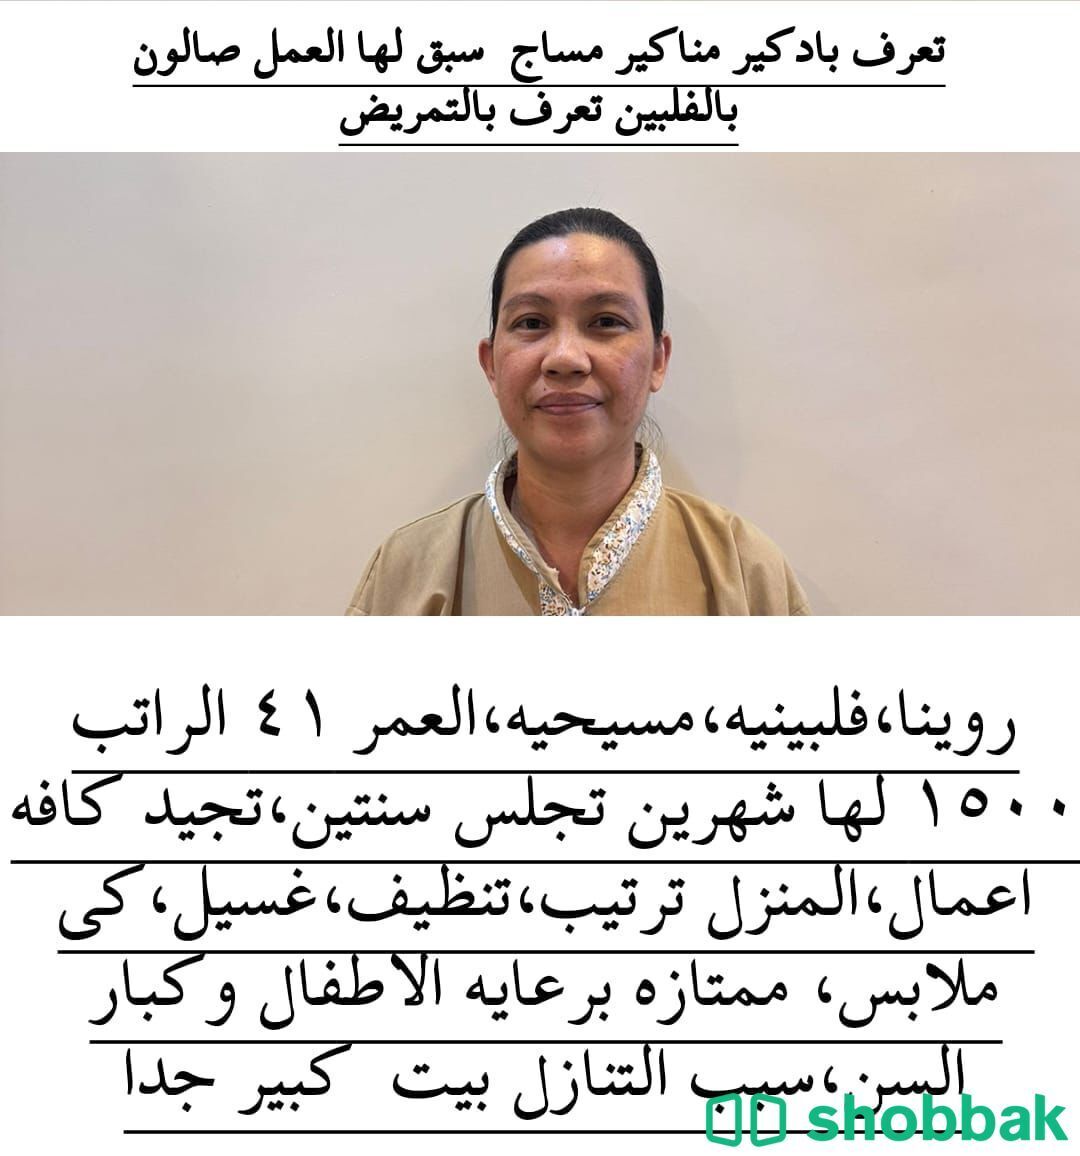 مكتب سلطان الزهراني لتنازل  Shobbak Saudi Arabia